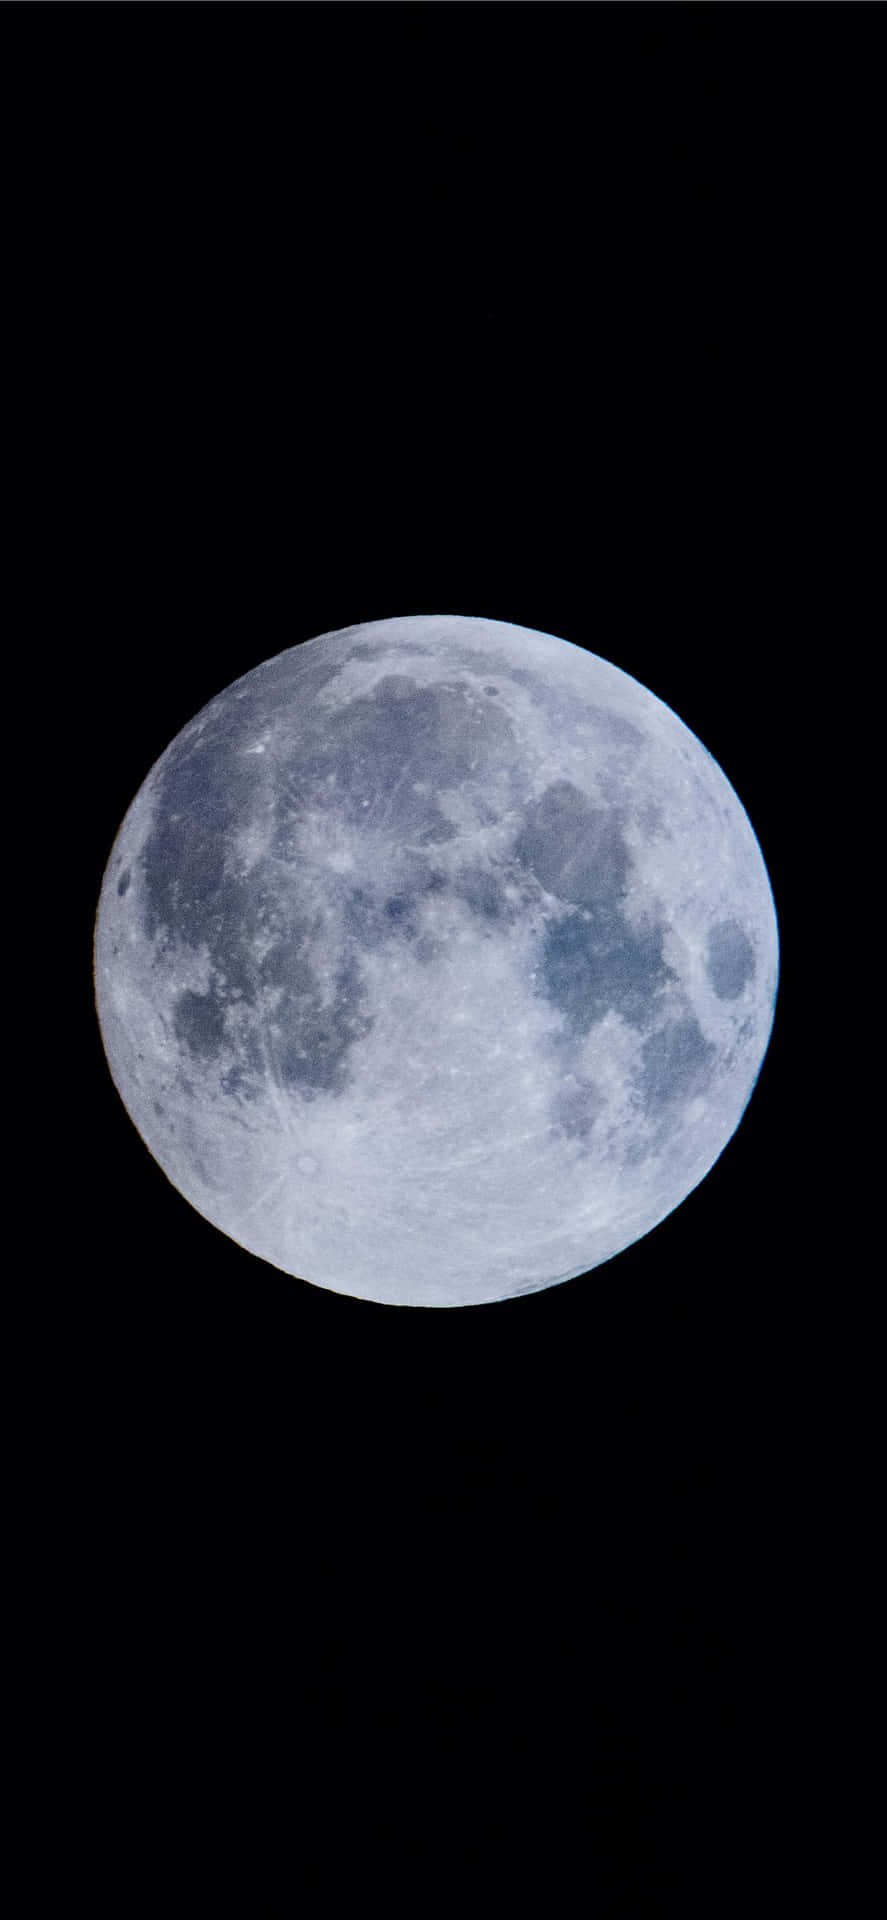 Unsolo Rayo De Luz De La Luna Proyecta Su Reflejo Sobre Un Iphone Negro Medianoche. Fondo de pantalla